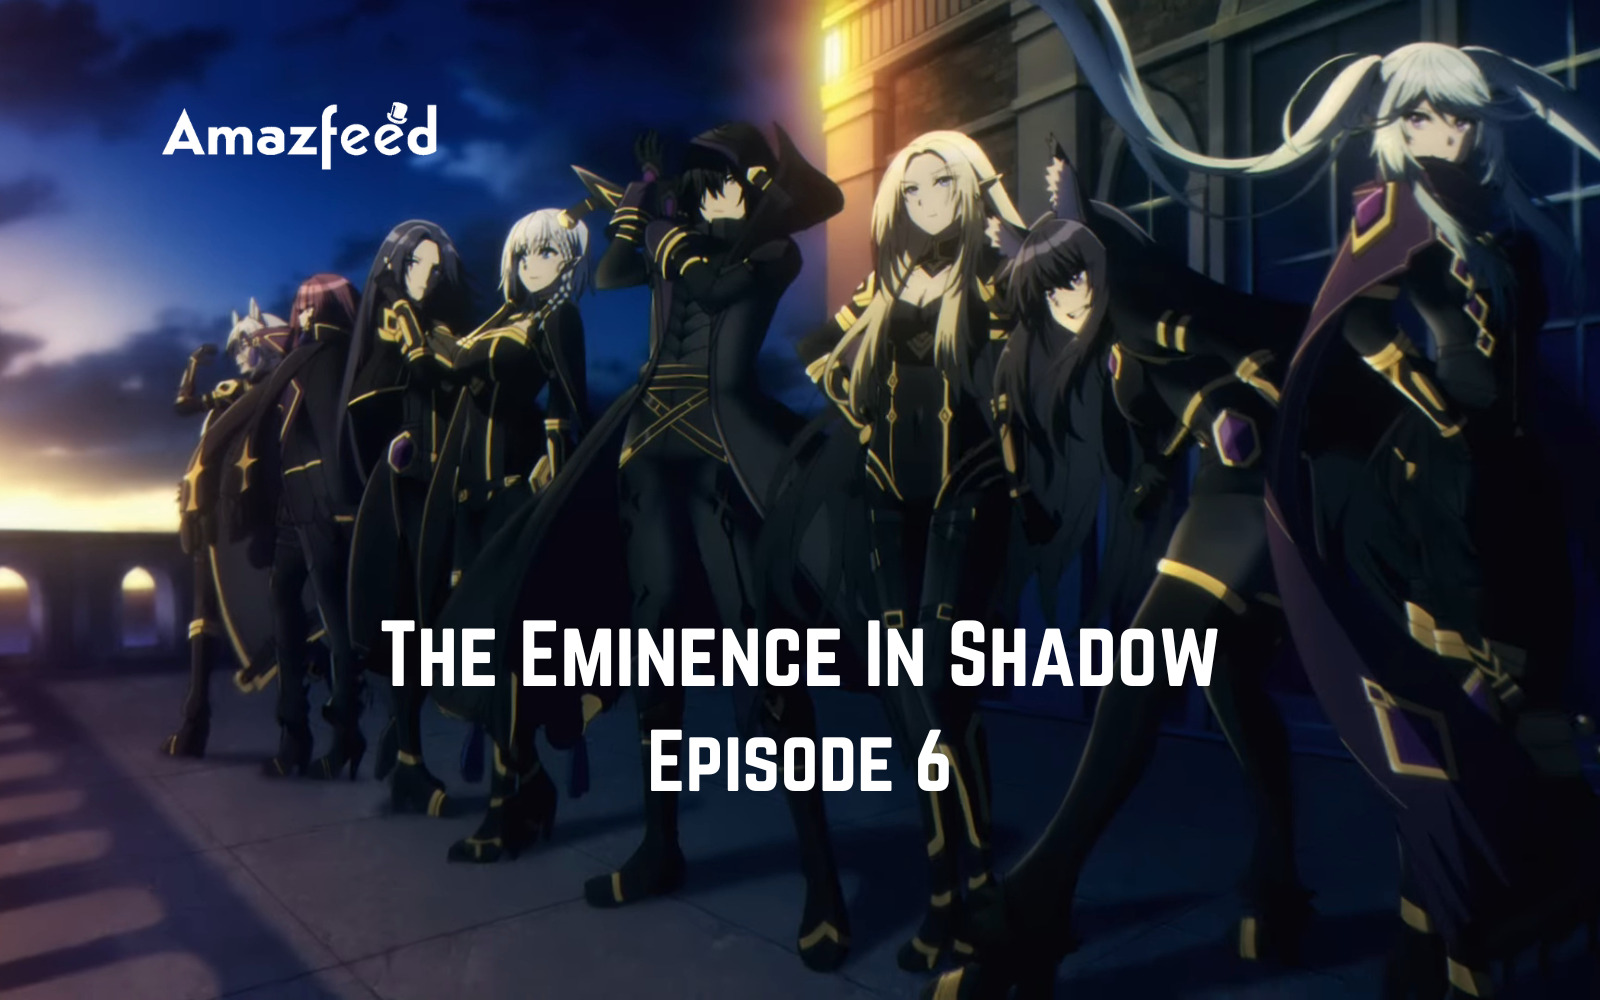 The Eminence in Shadow Episode 6 Recap: Pretenders